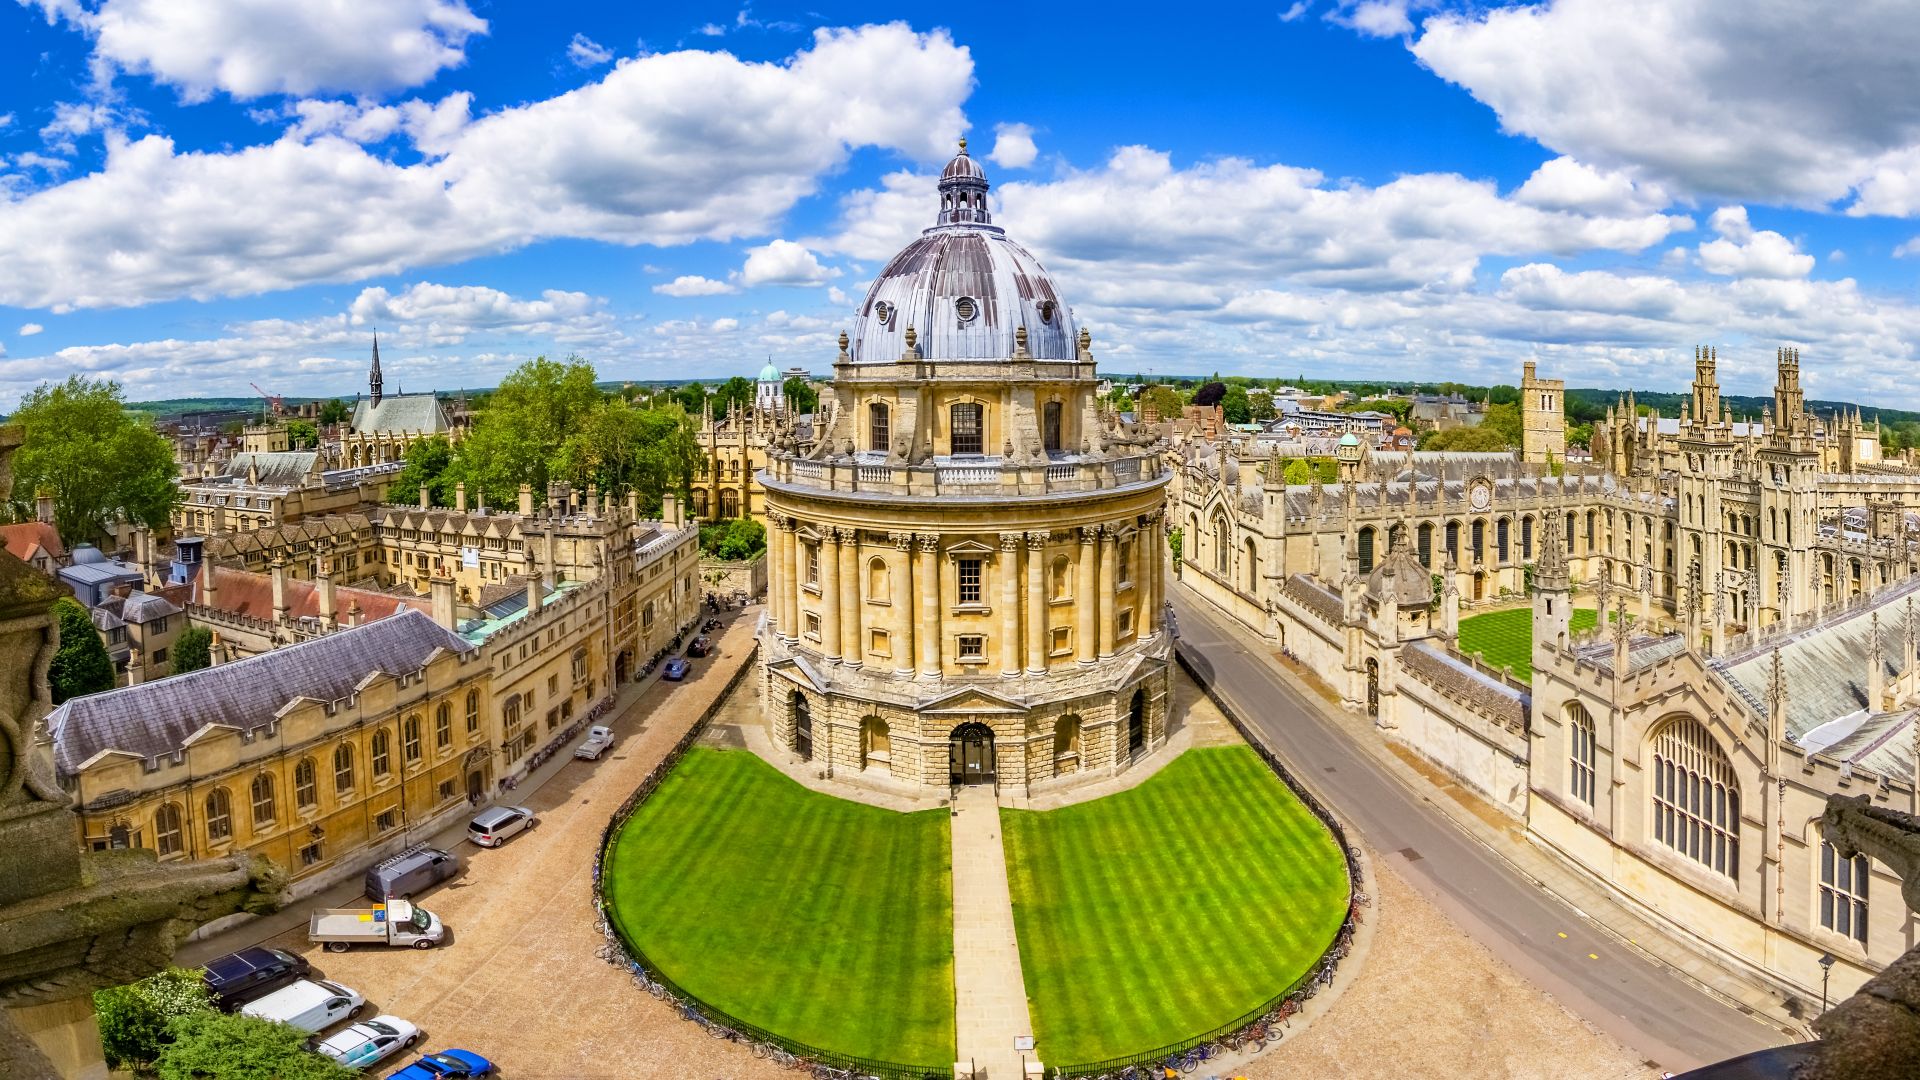 Rues d’Oxford-landmark, Angleterre - vue d’ensemble de la tour d’une église avec la Bodleian Library et All Souls College